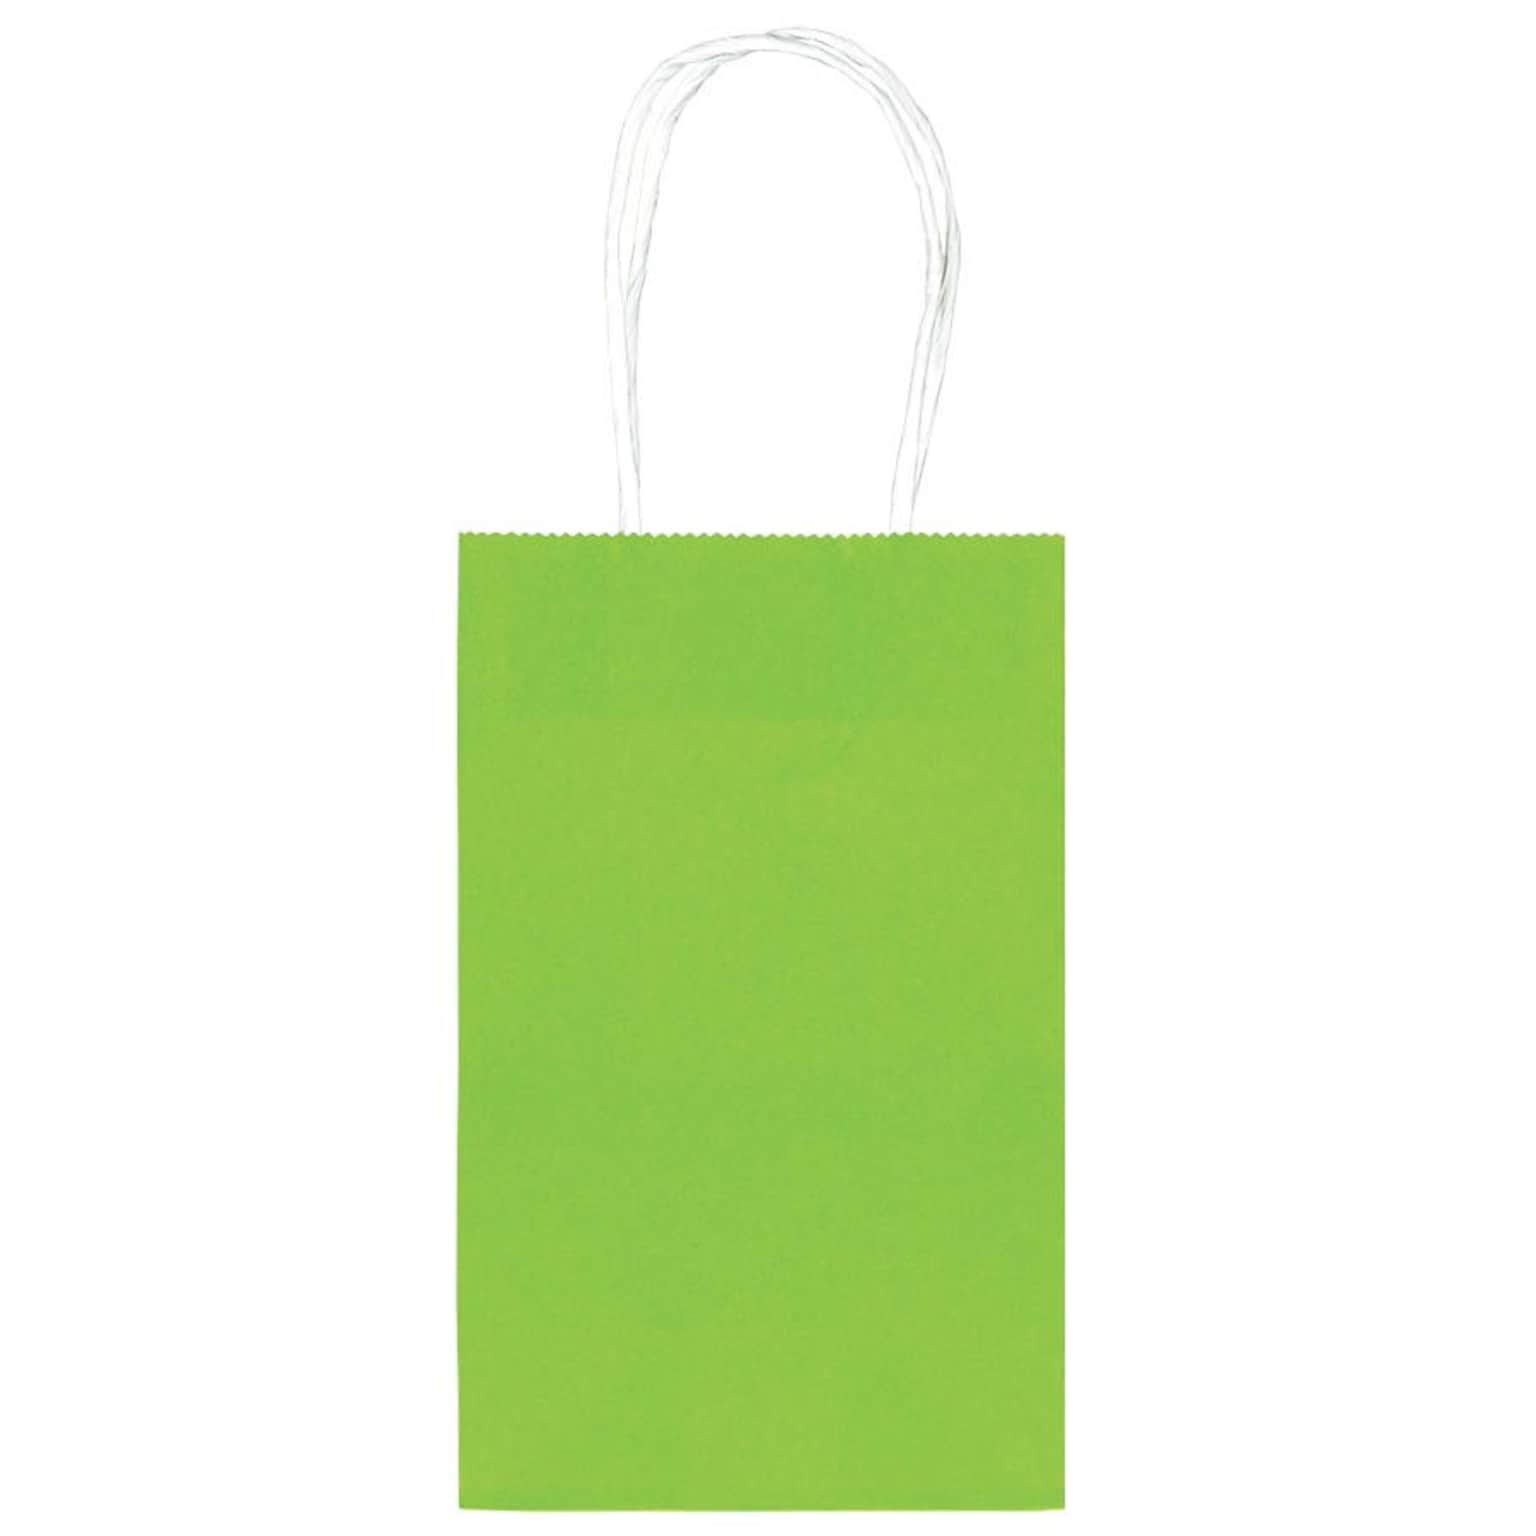 Amscan Kraft Paper Bag, 8.25 x 5.25, Kiwi, 4/Pack, 10 Bags/Pack (162500.53)